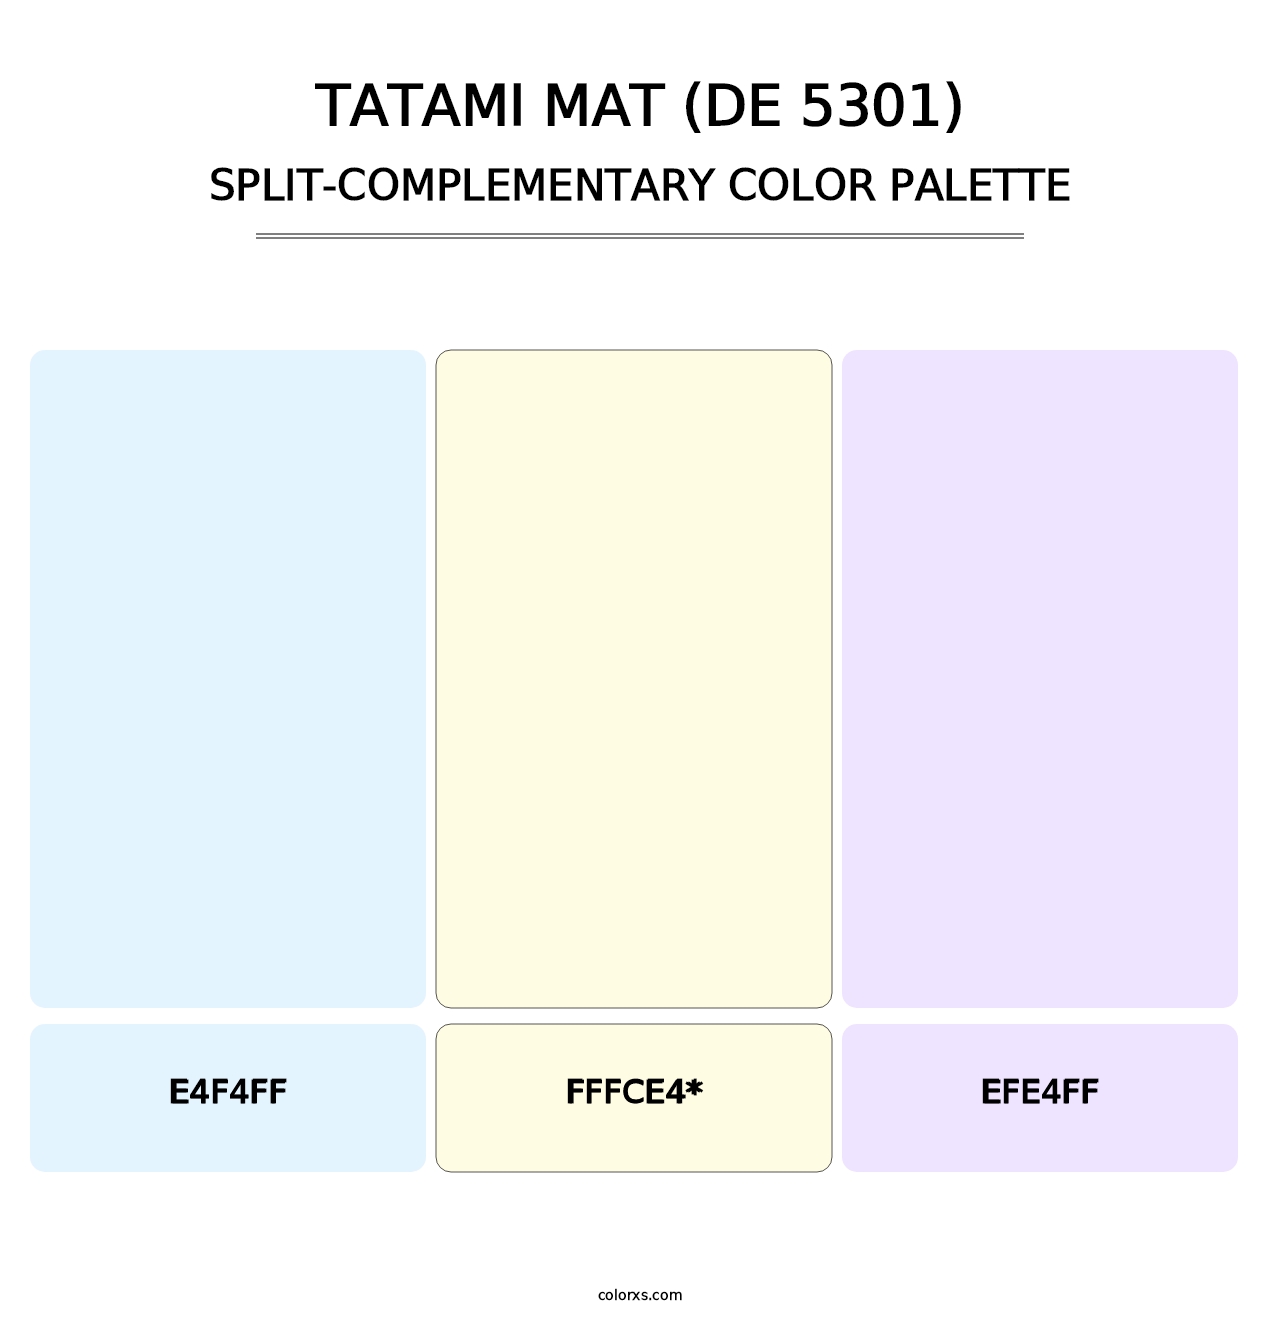 Tatami Mat (DE 5301) - Split-Complementary Color Palette